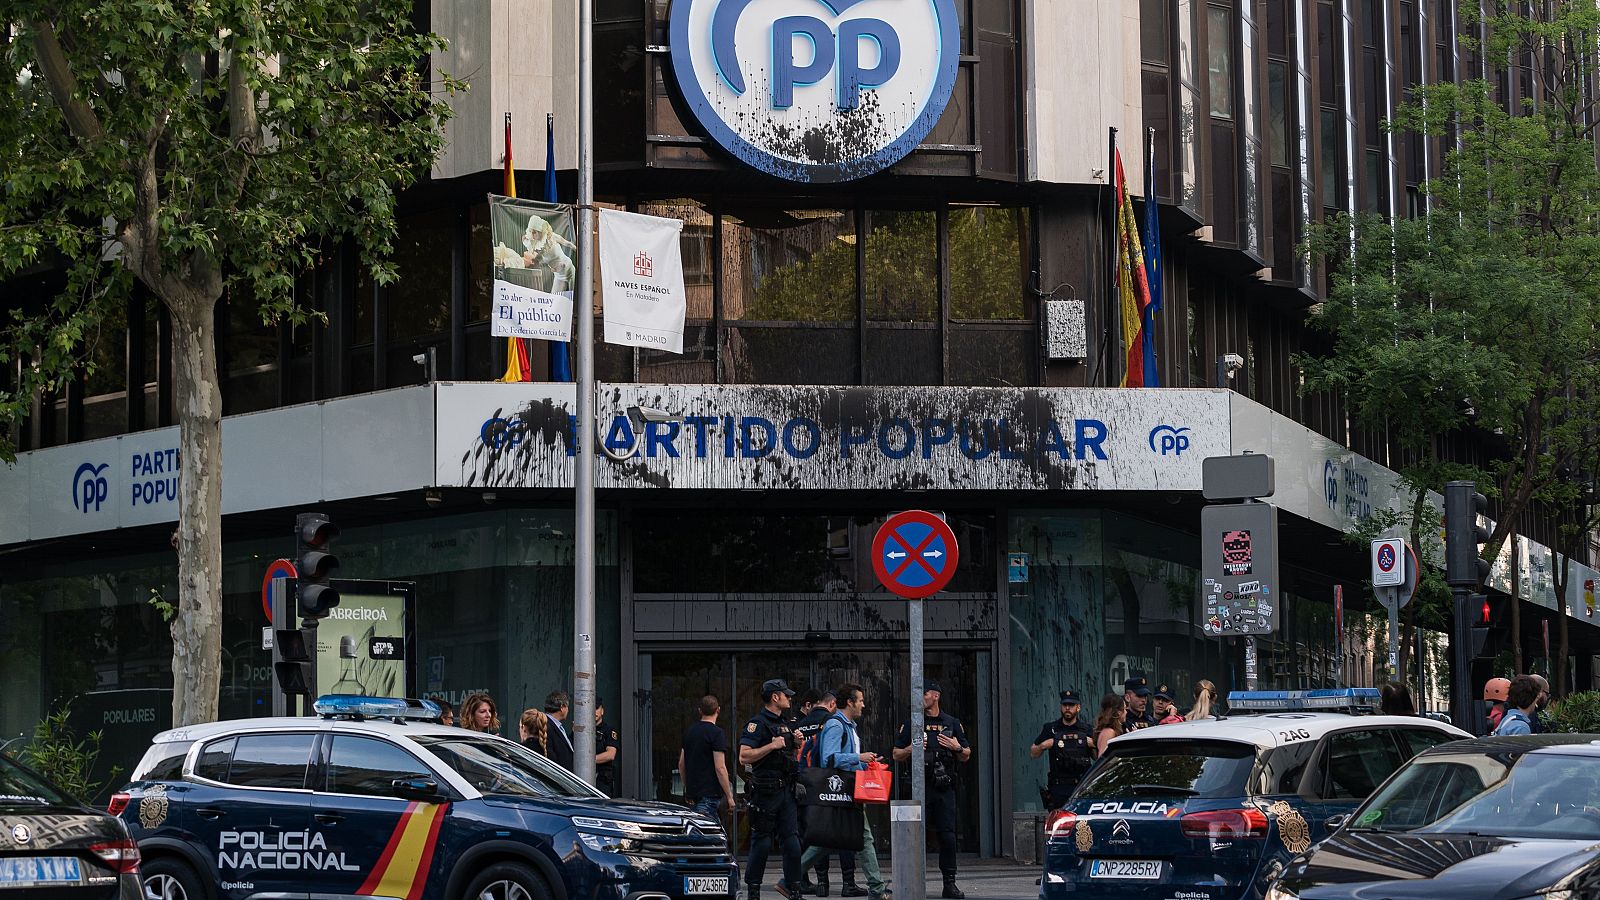 Agentes de la policía nacional frente a la fachada de la Sede del Partido Popular en la calle Génova. La fachada está manchada de pintura negra.